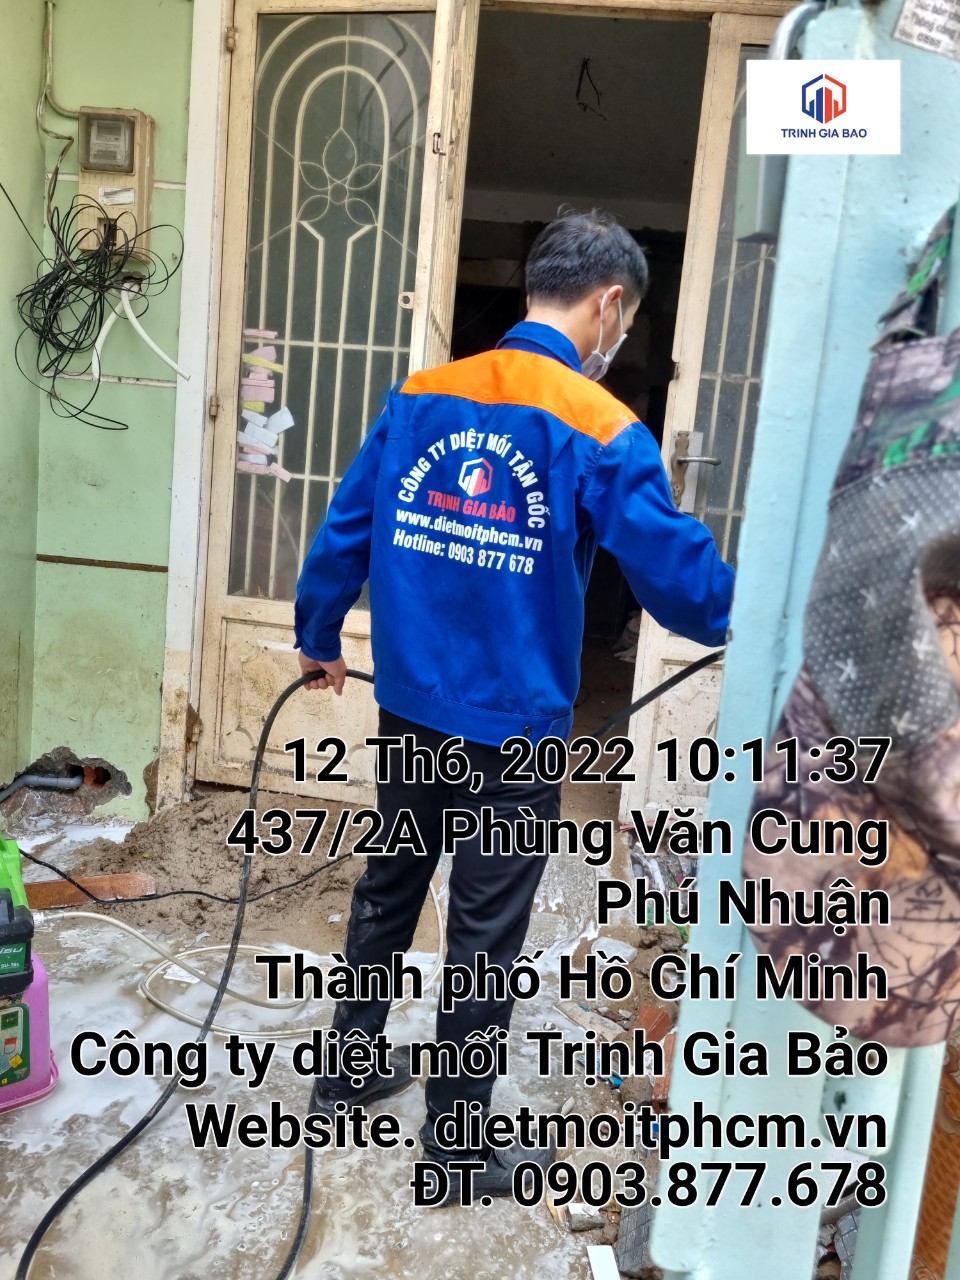 Quy trình diệt mối tại quận Tân Bình an toàn của Cachdietmoi.vn